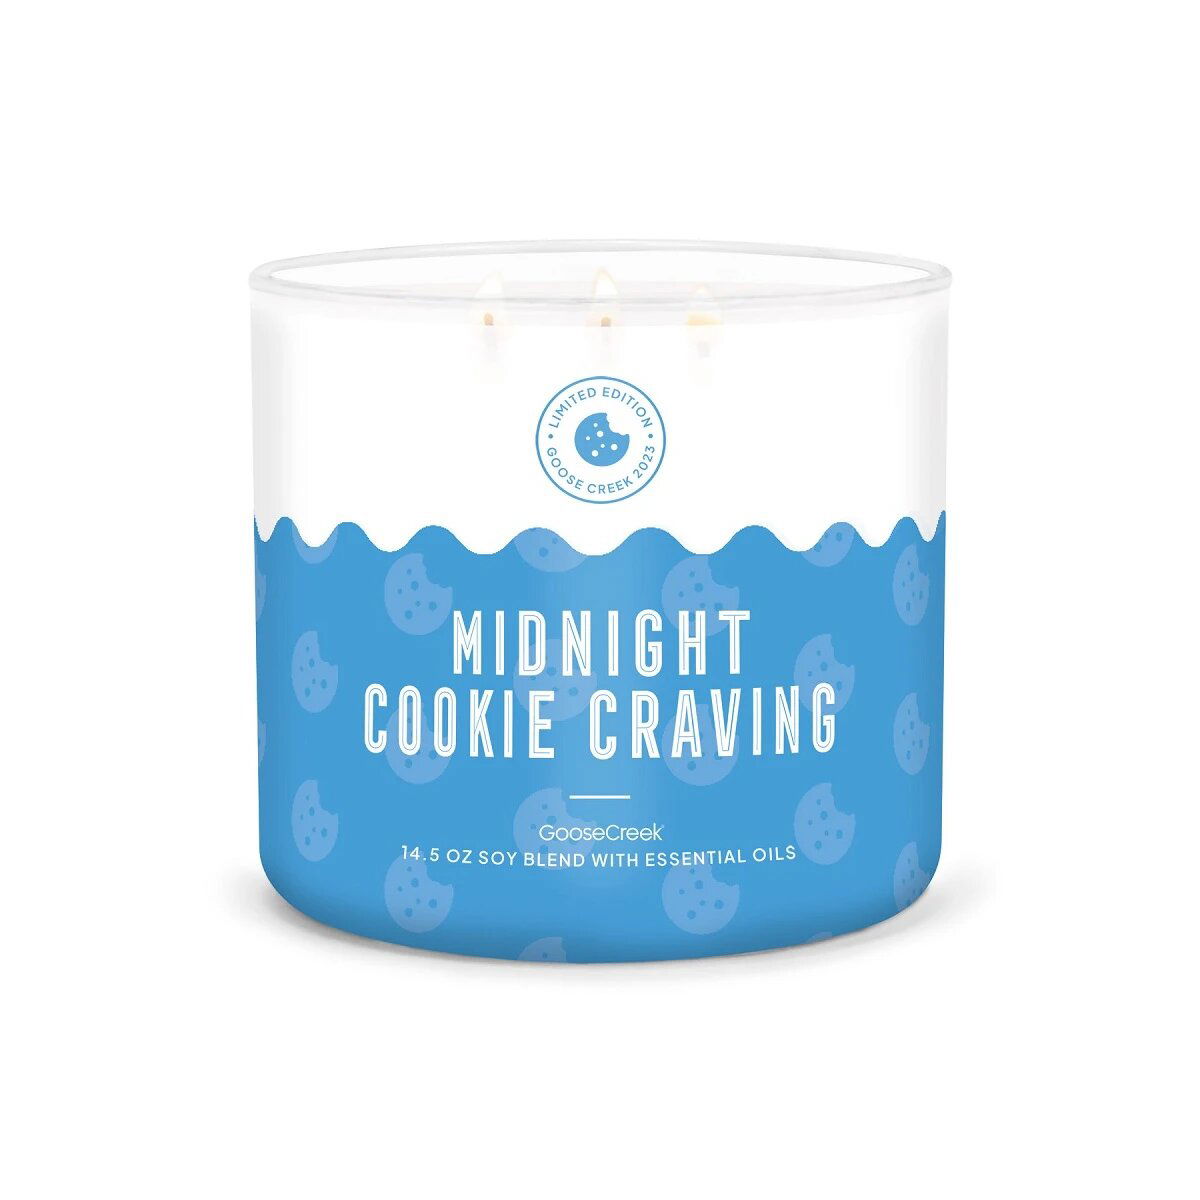 Midnight Cookie Craving 411g (3-Docht)